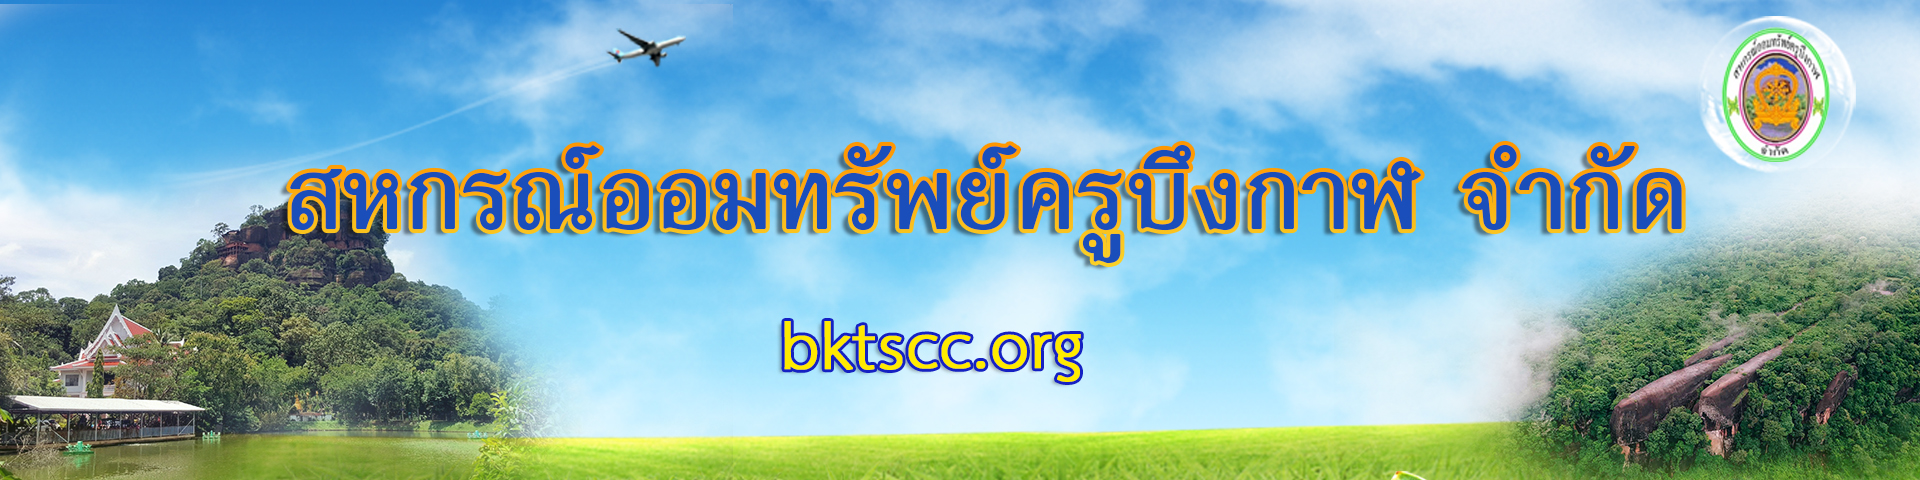 Bktscc.org